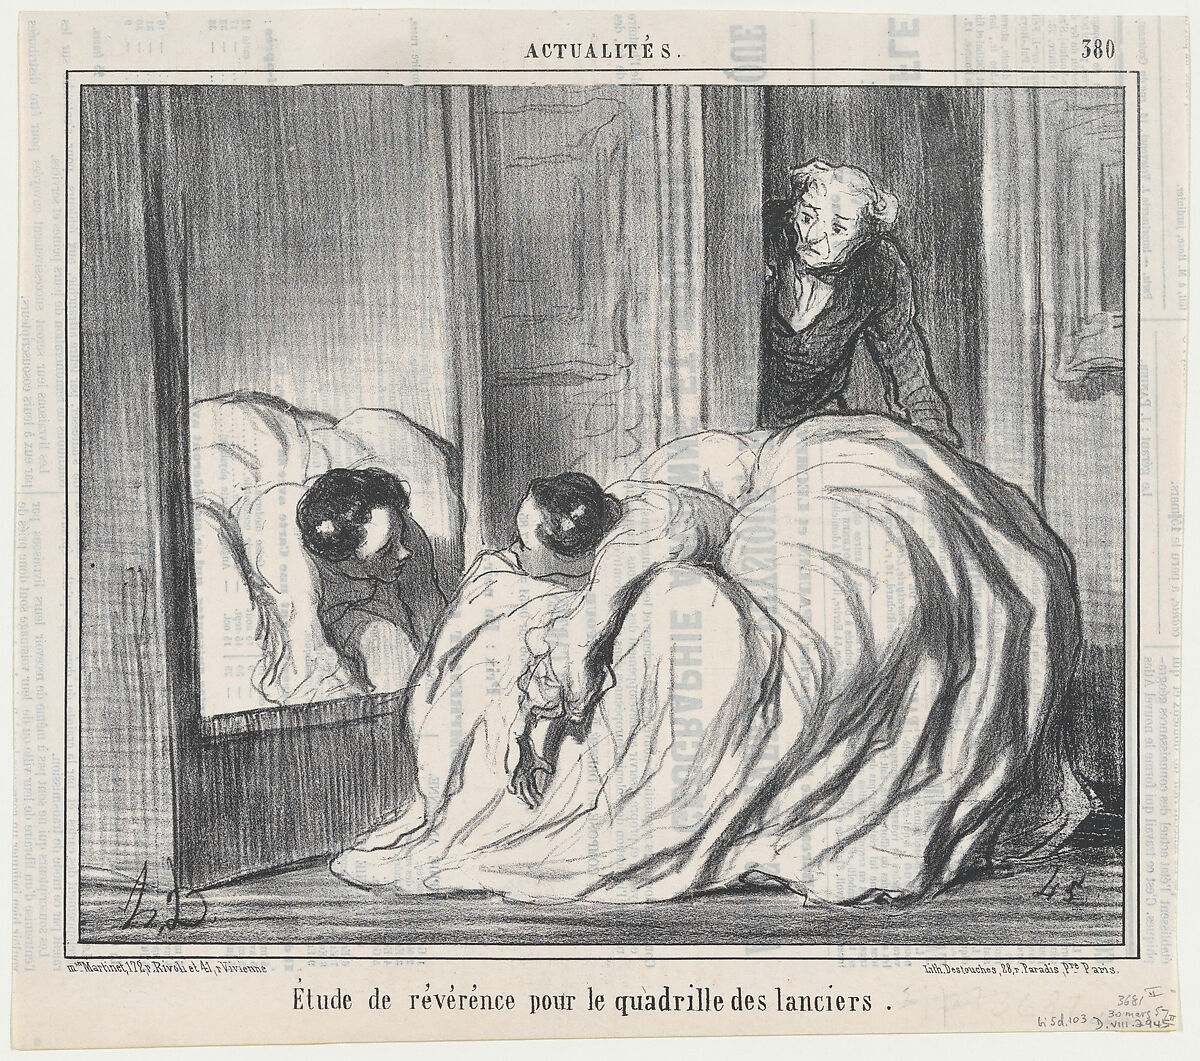 Étude de révérence pour le quadrille des lanciers, from Actualités, publlished in Le Charivari, March 30, 1857, Honoré Daumier (French, Marseilles 1808–1879 Valmondois), Lithograph; second state of two (Delteil) 